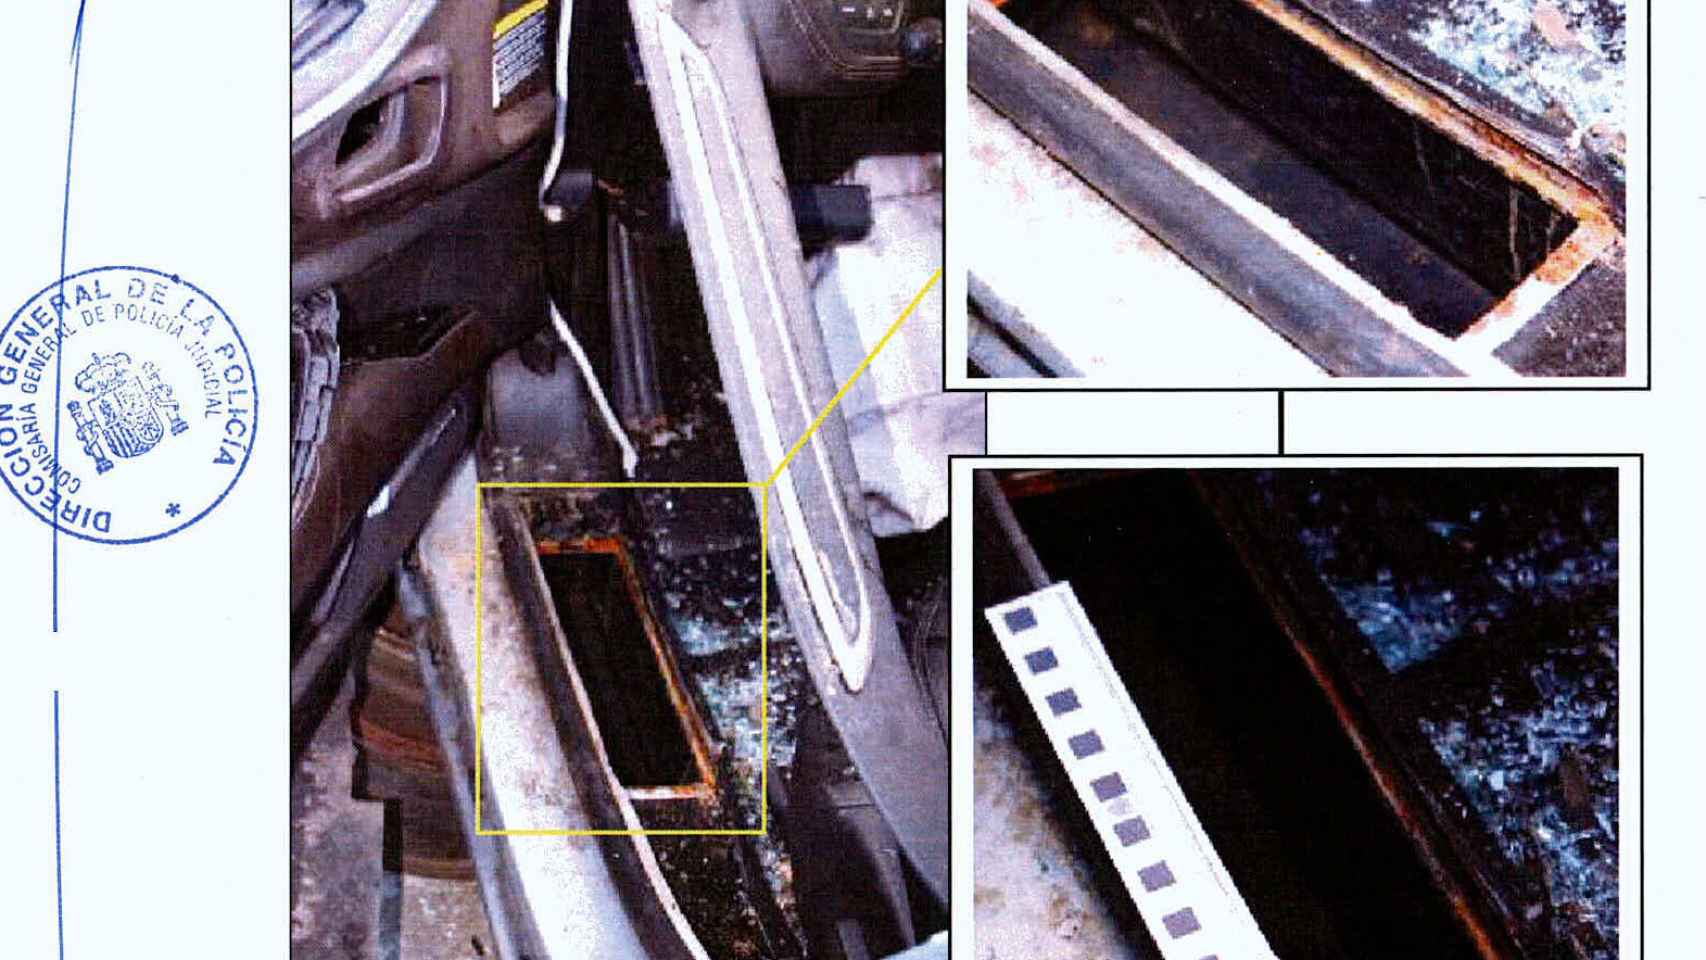 El hueco secreto detectado en el lateral izquierdo del coche.